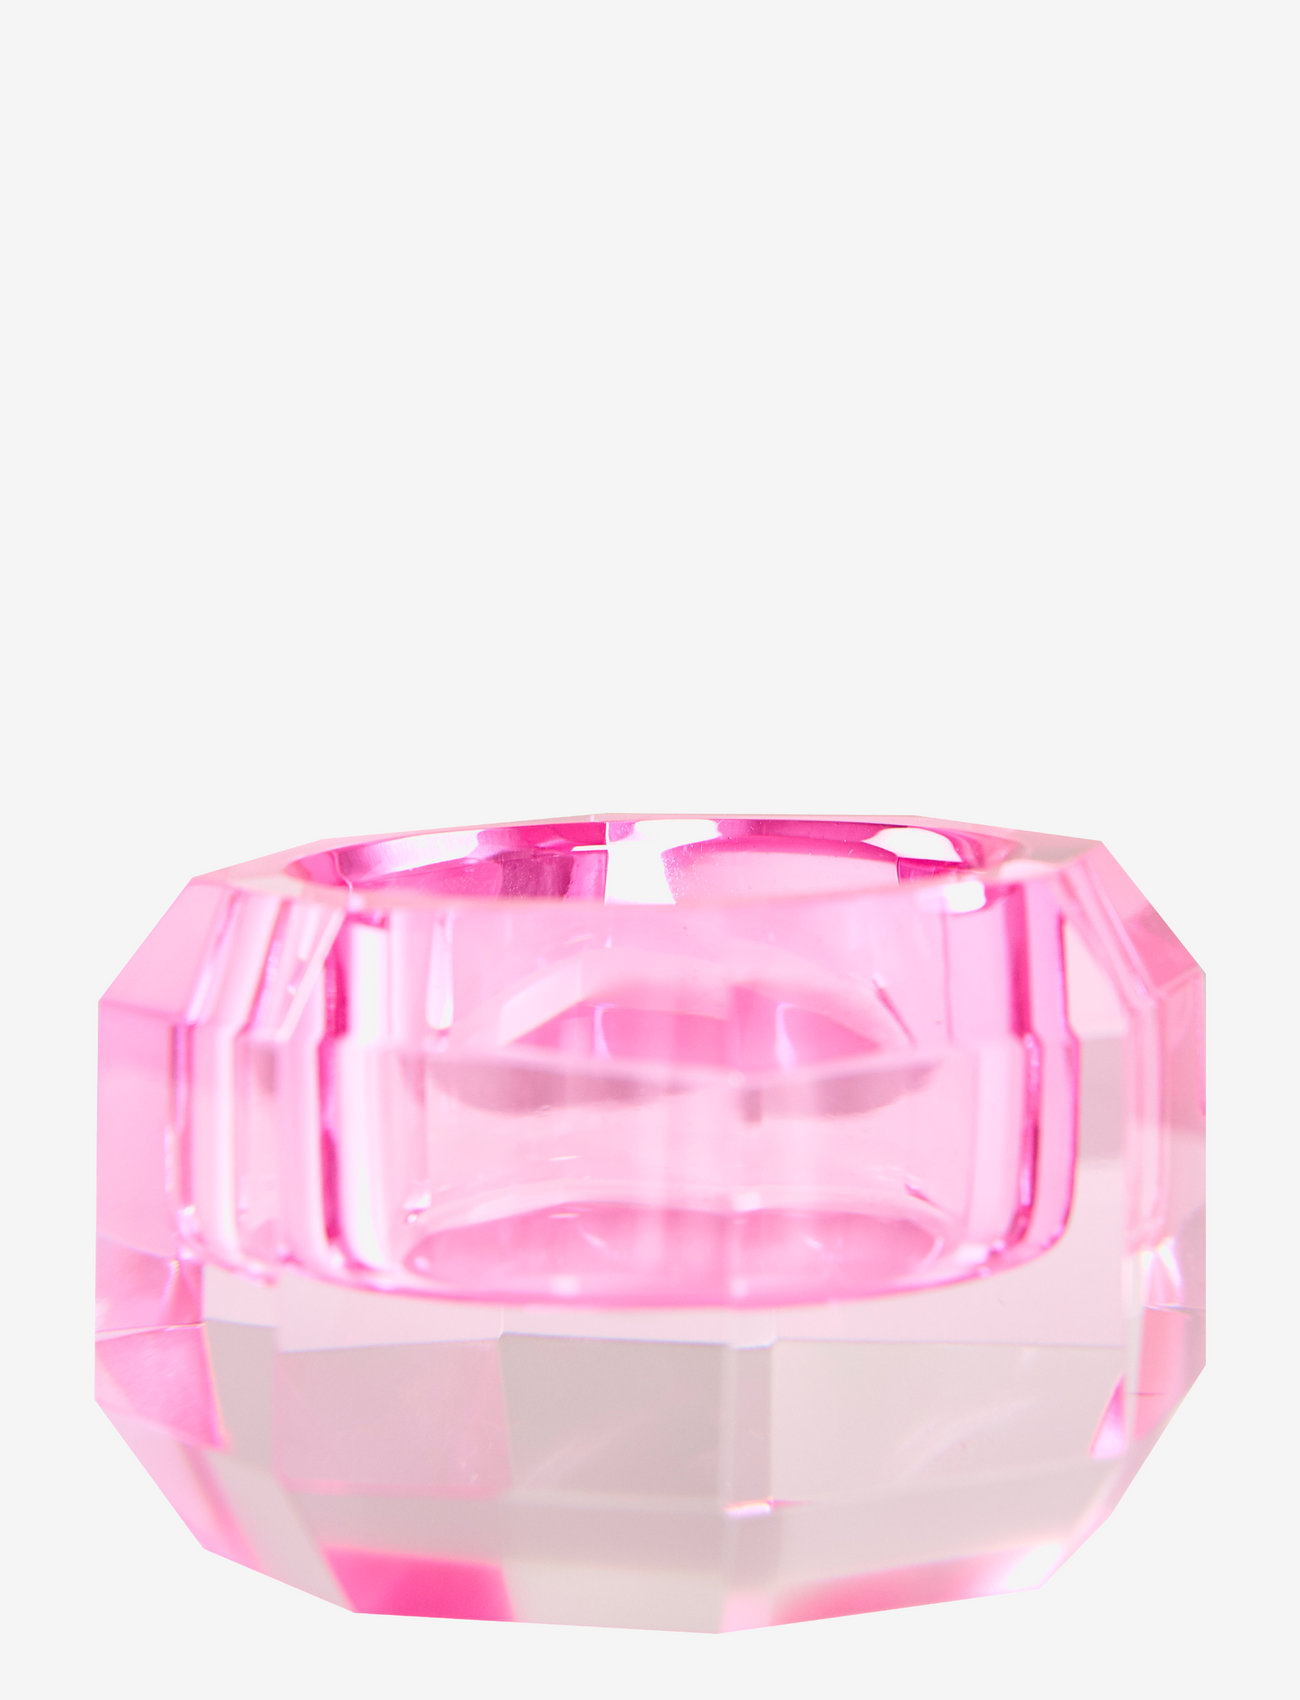 C'est Bon - Krystal lysestage - laveste priser - pink - 0